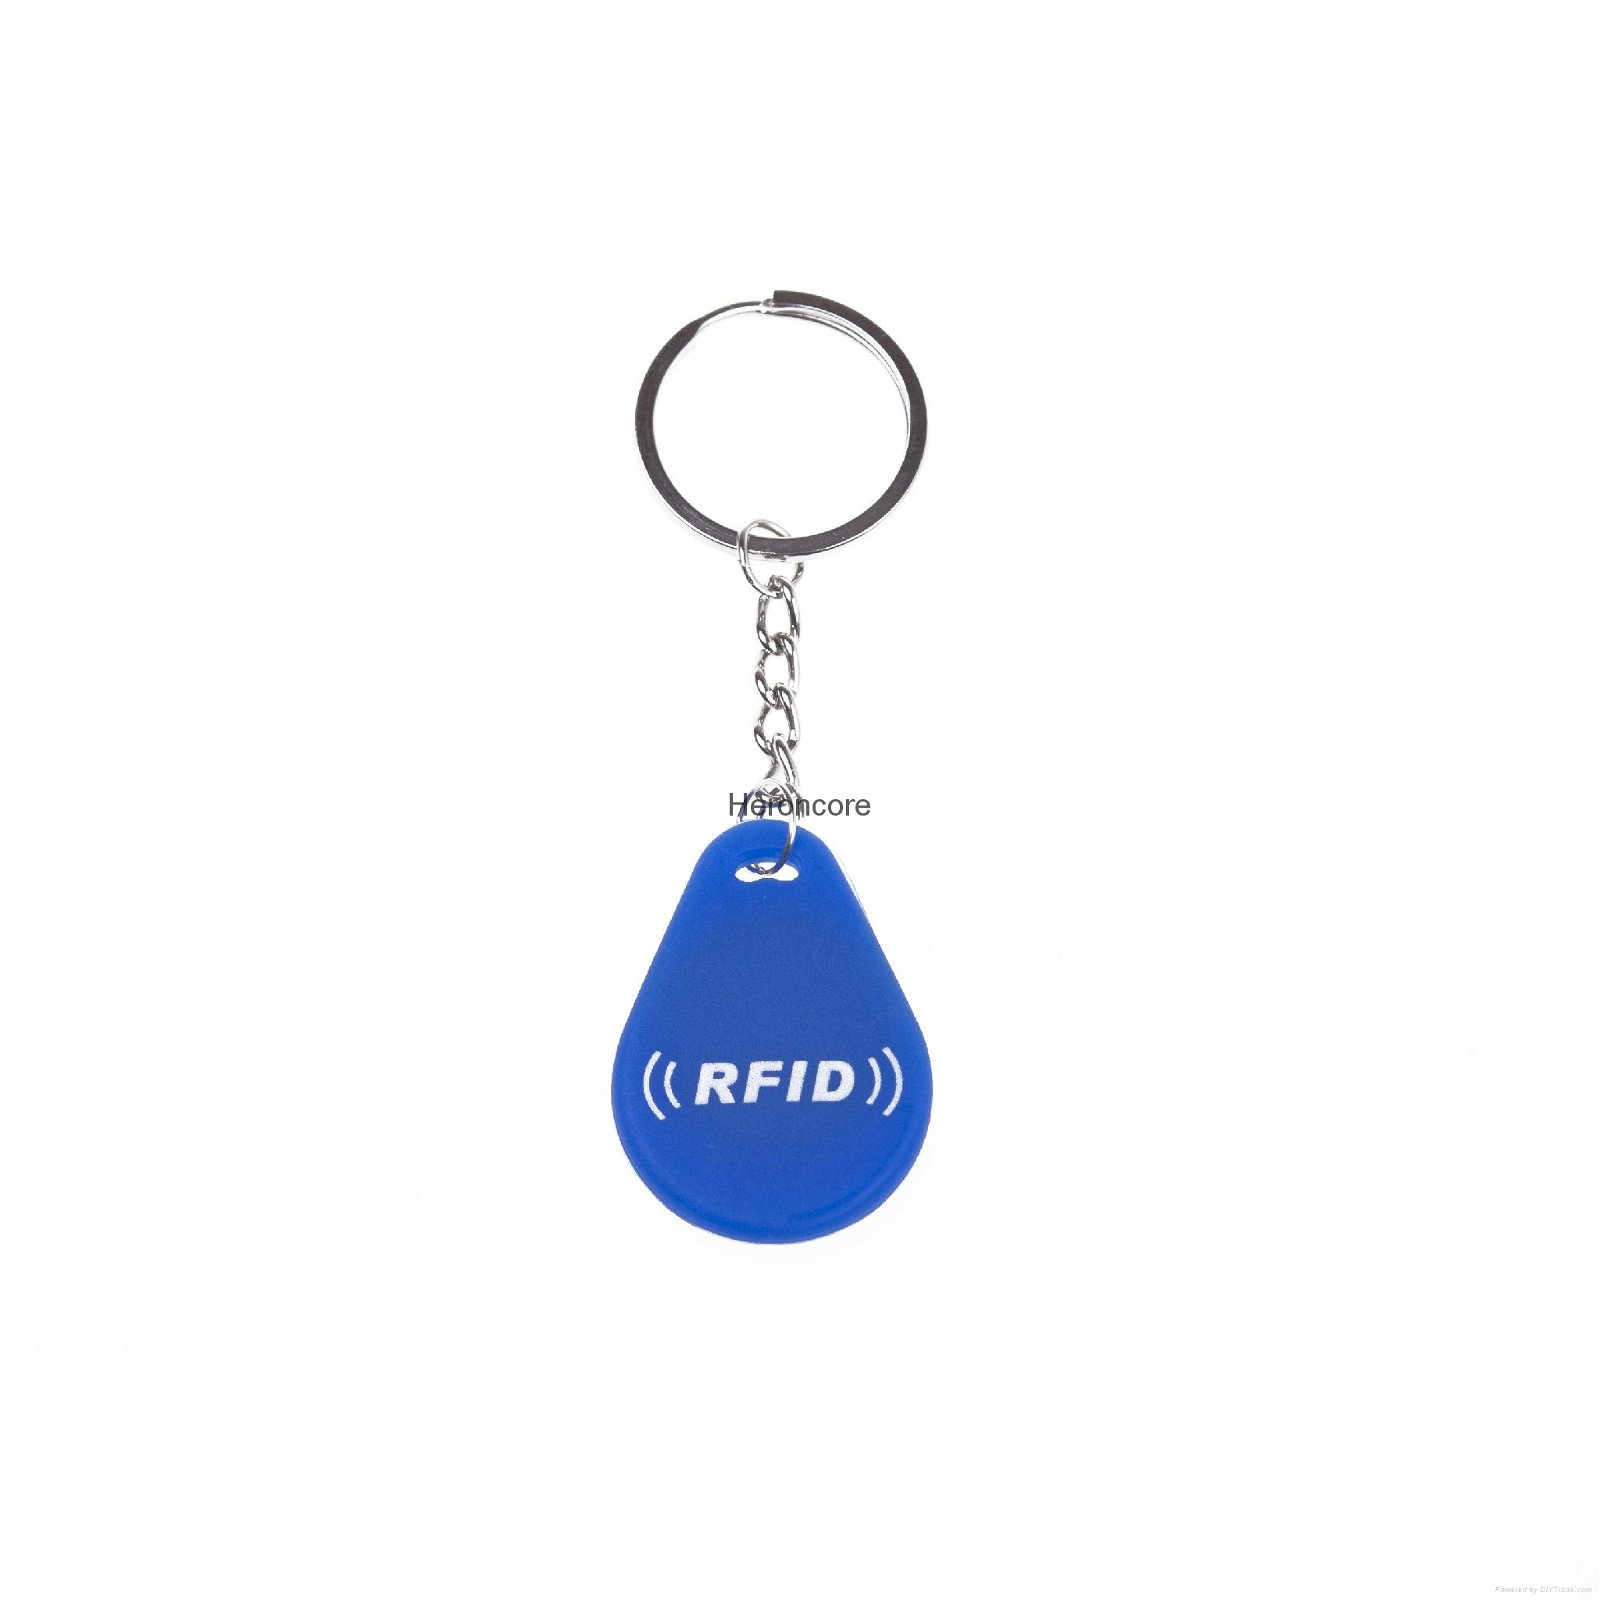 RFID keyfob tag